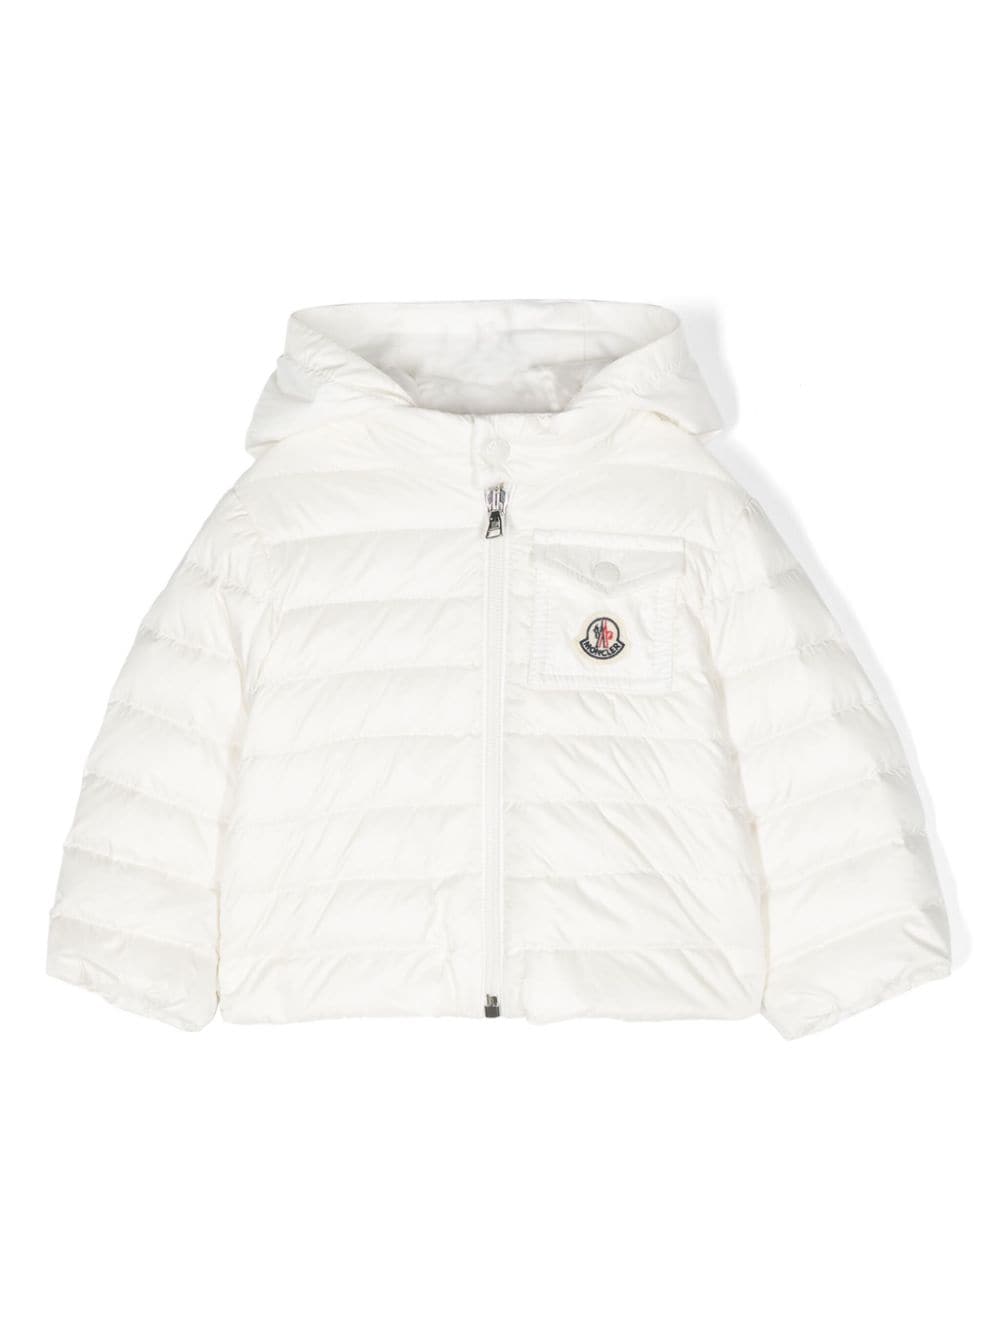 Moncler Enfant Baigal padded jacket - White von Moncler Enfant